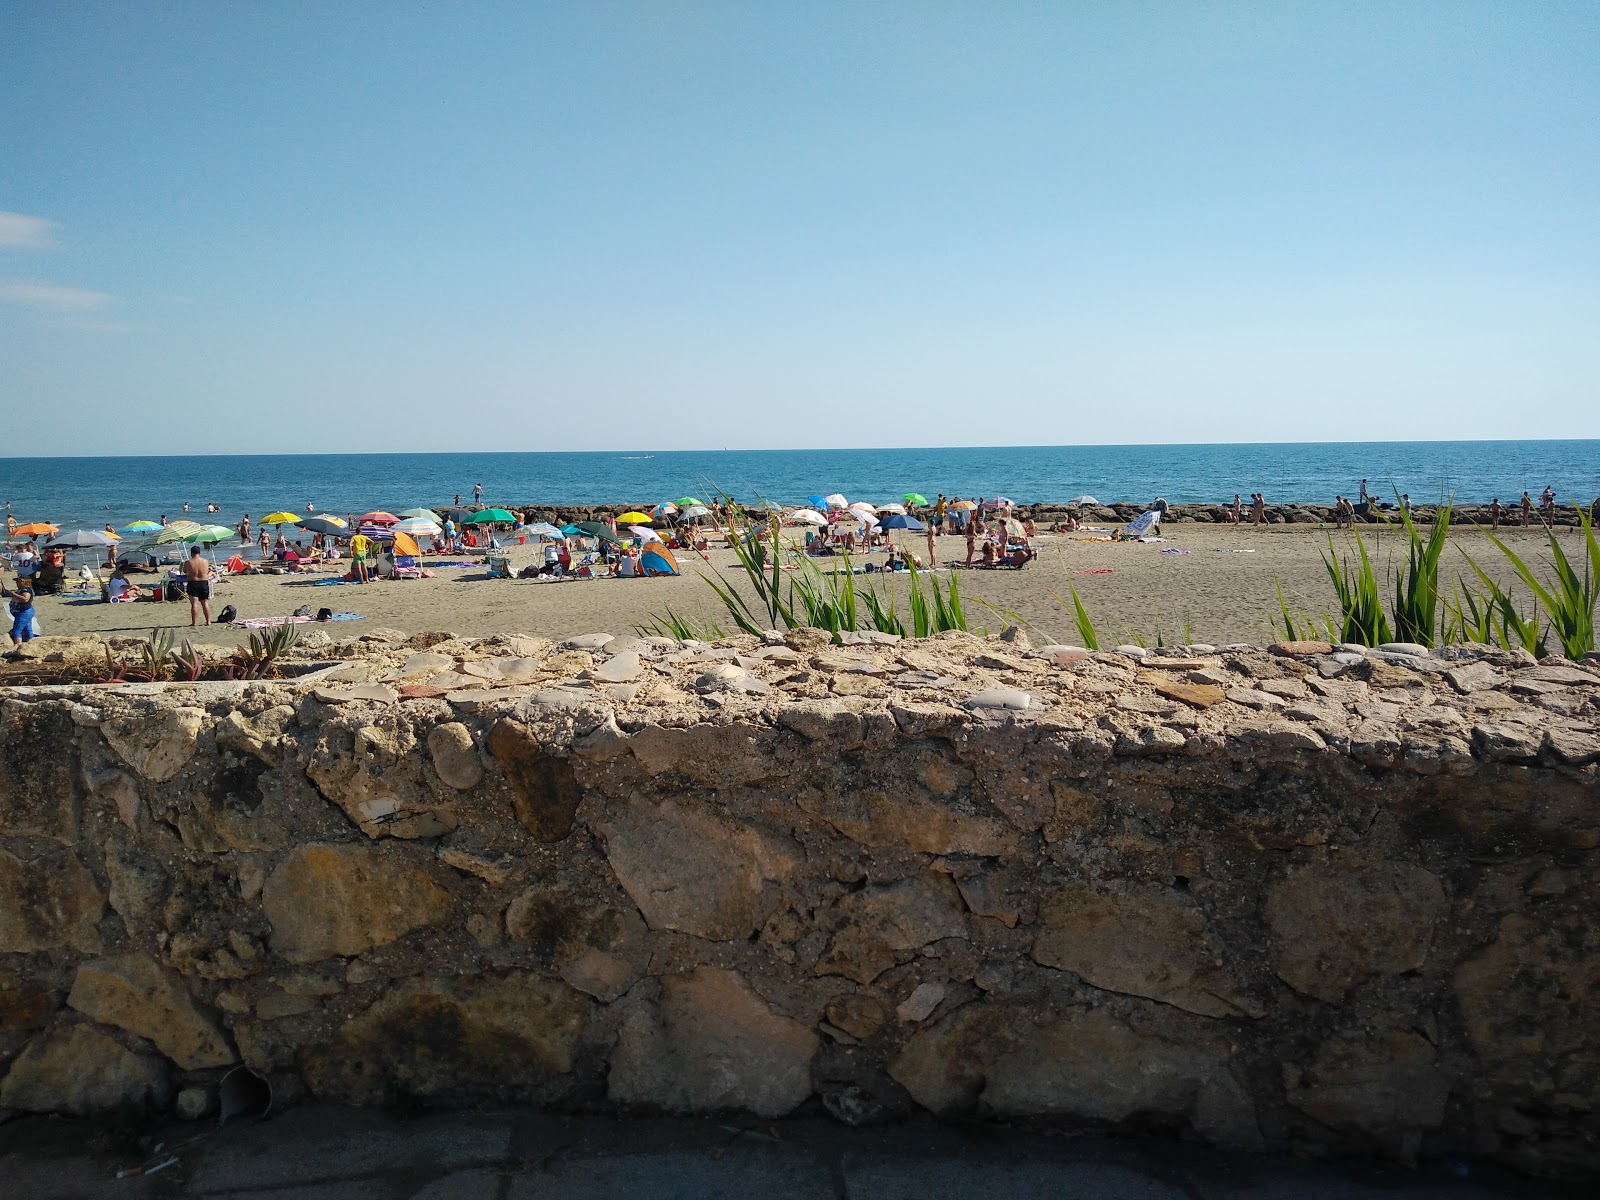 Fotografie cu Il Castello beach - locul popular printre cunoscătorii de relaxare